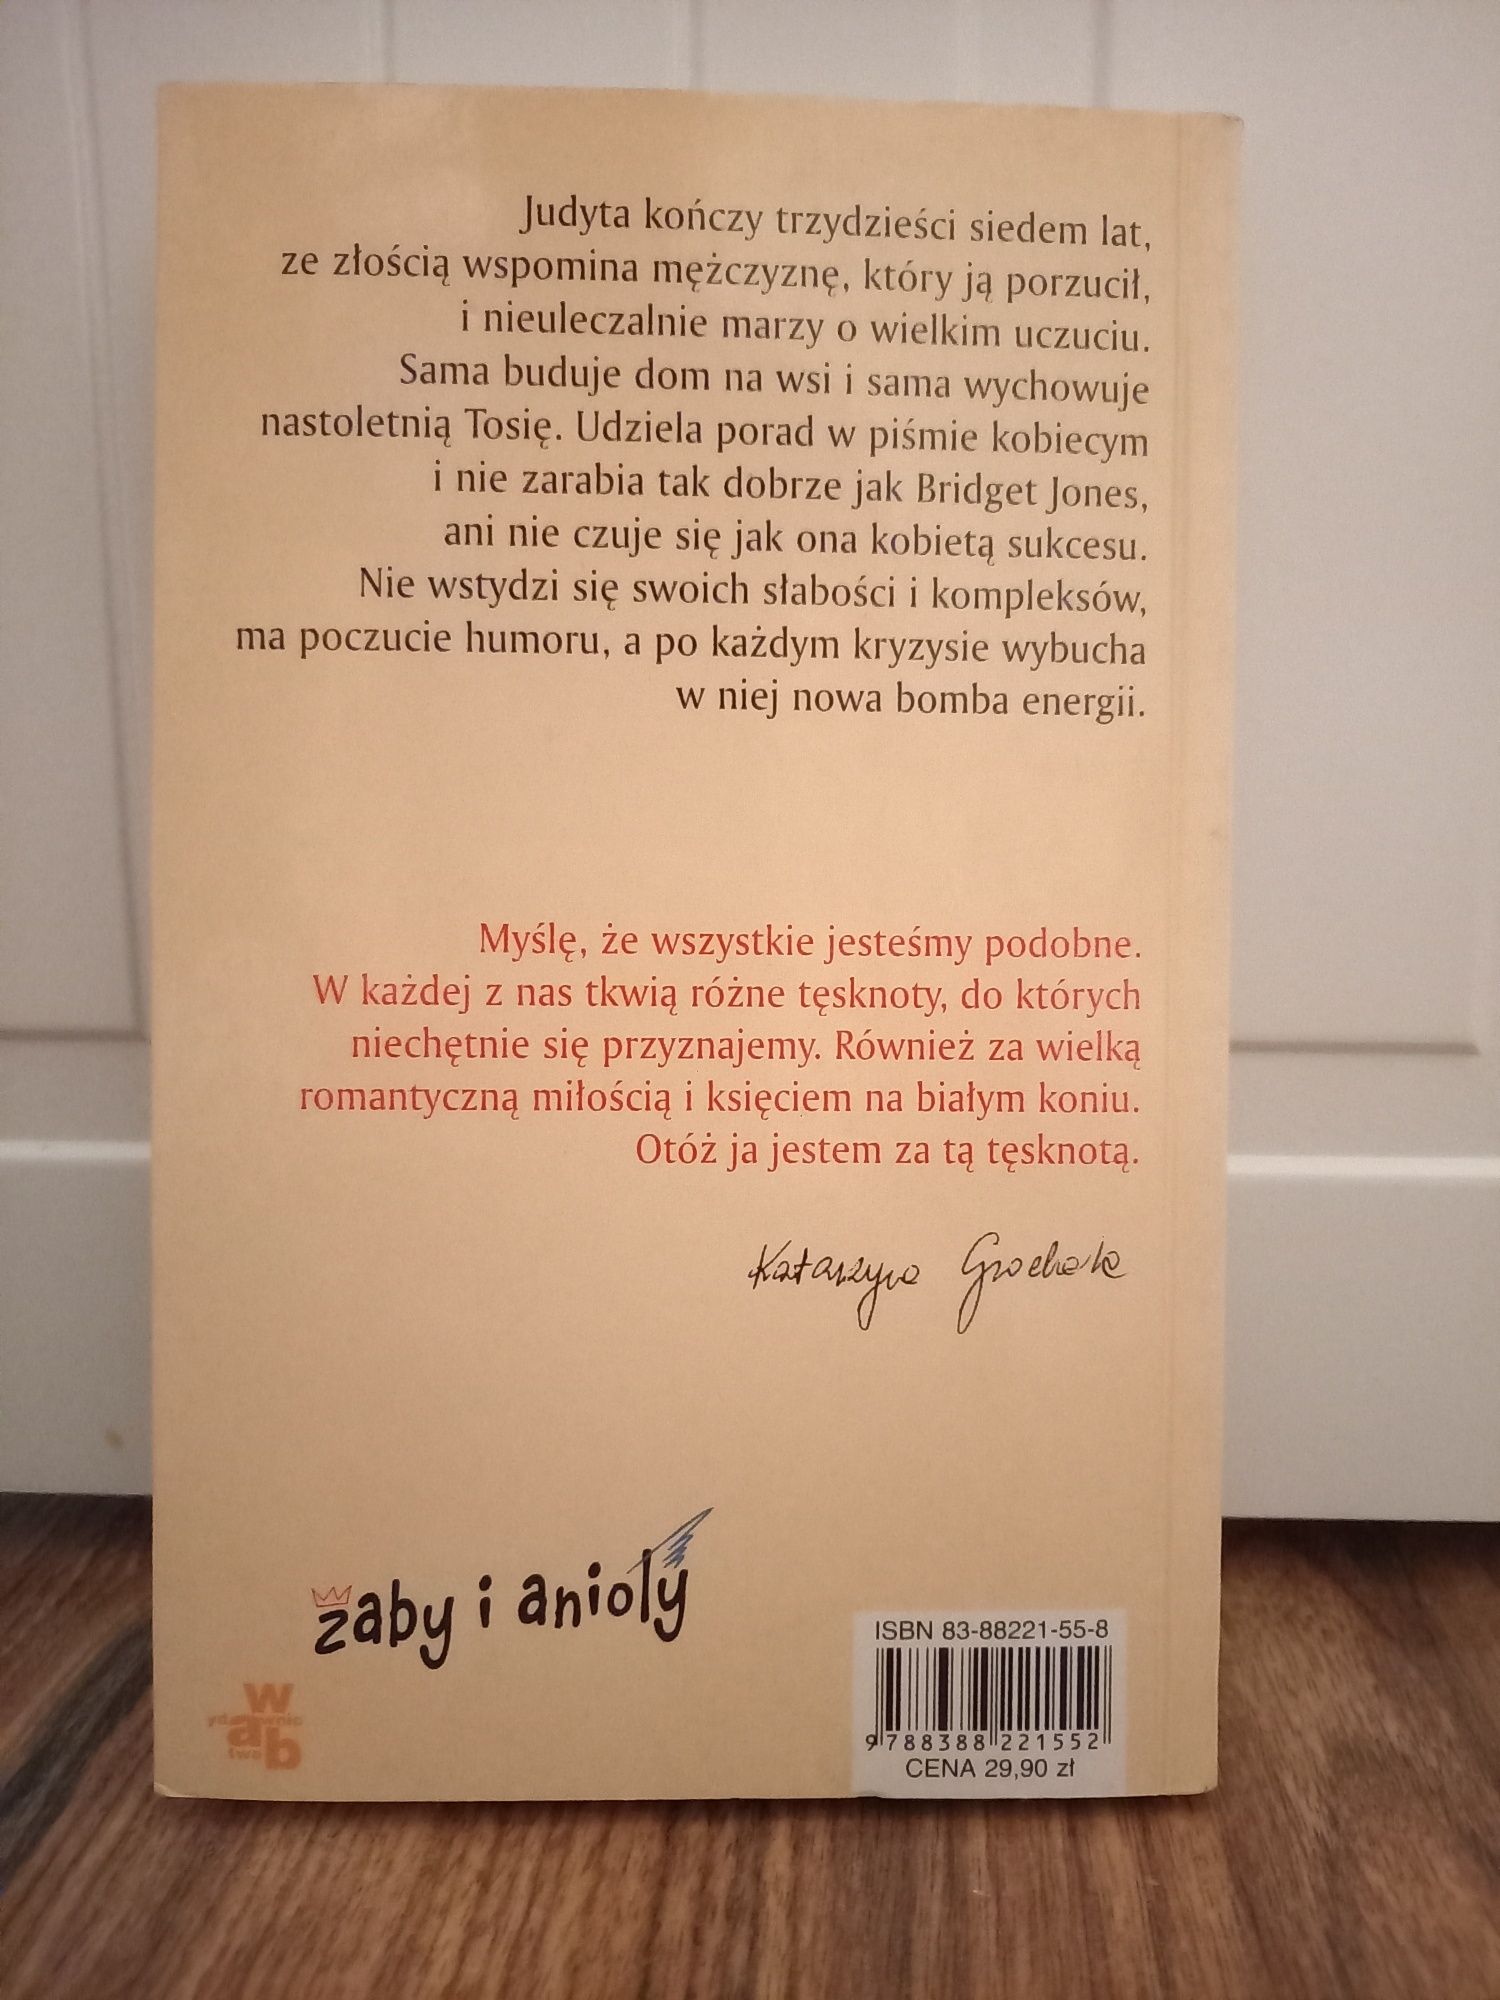 Książka "Nigdy w życiu" Katarzyna Grochola